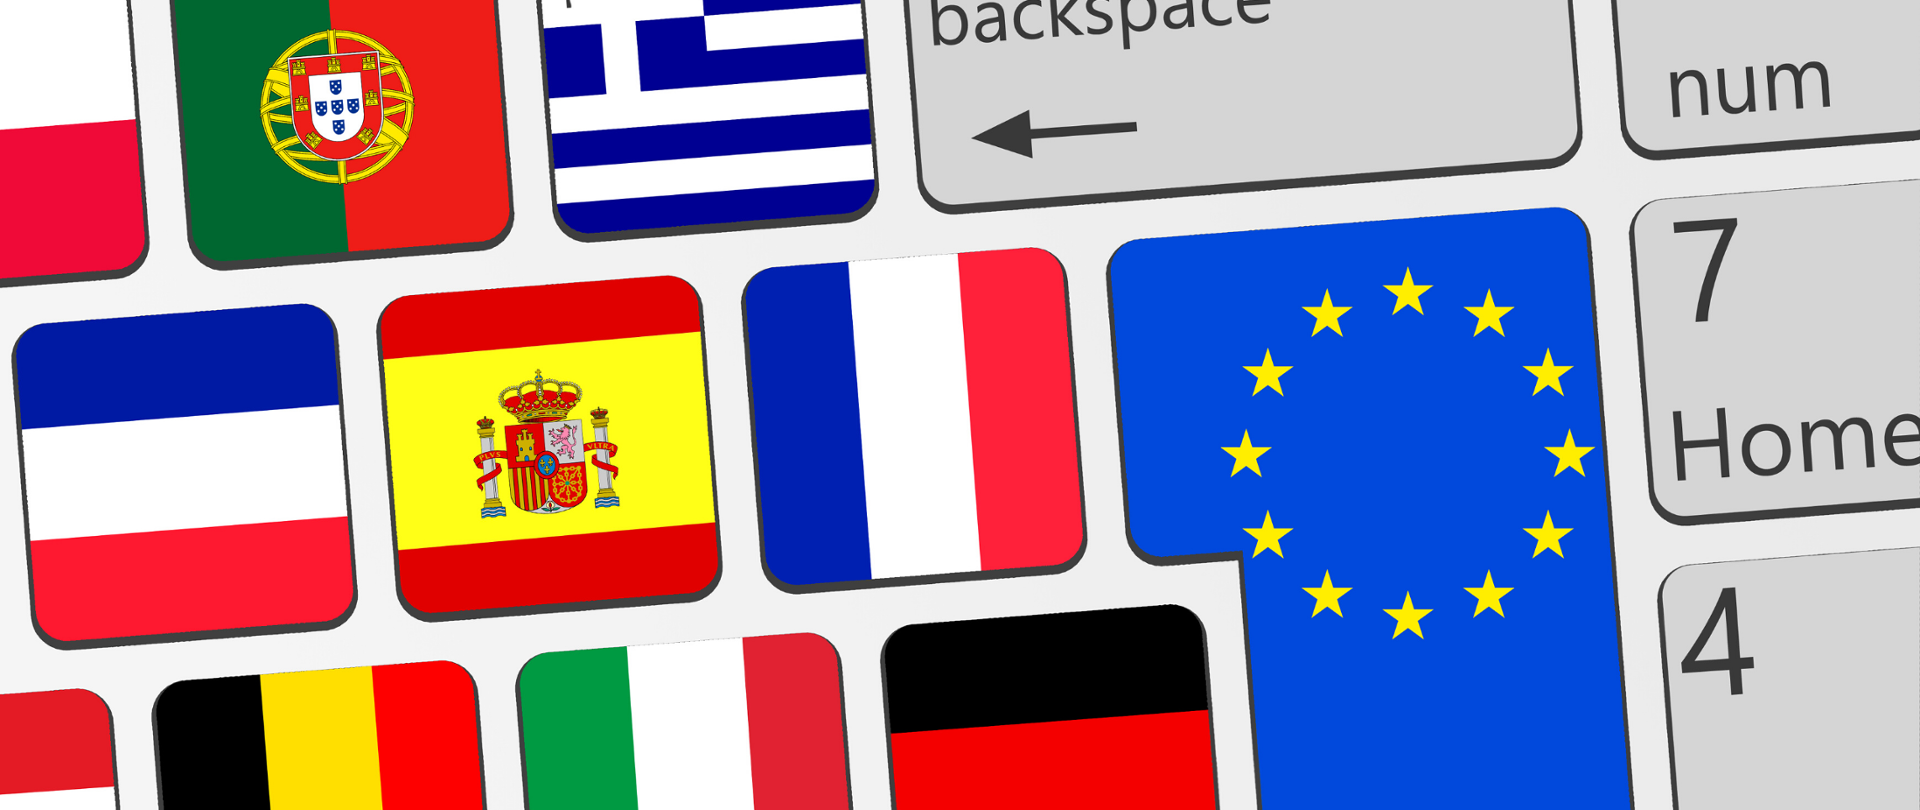 Biała klawiatura komputera. Na poszczególnych przyciskach flagi krajów Unii Europejskiej i Unii Europejskiej.